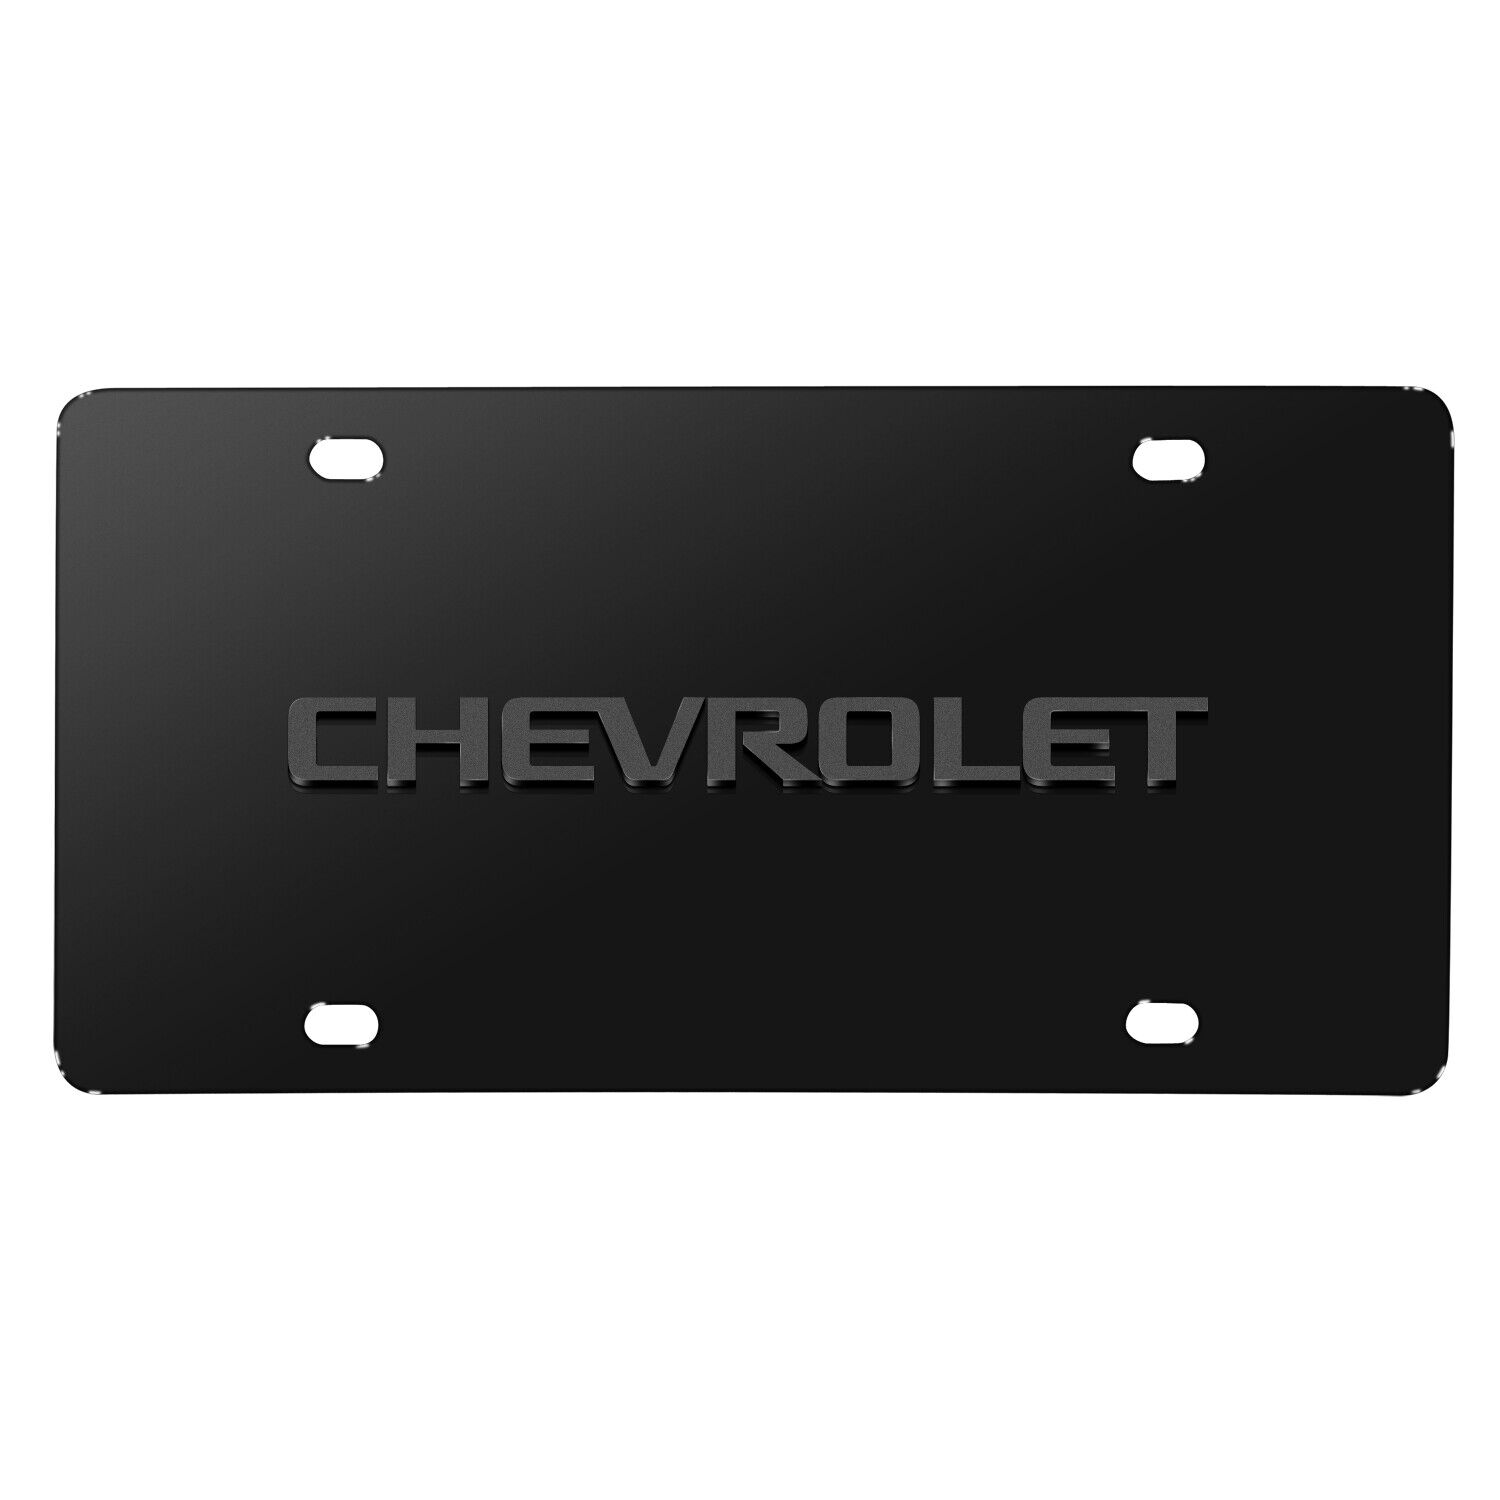 Chevrolet 3D Gray Logo on Black Stainless Steel License Plate